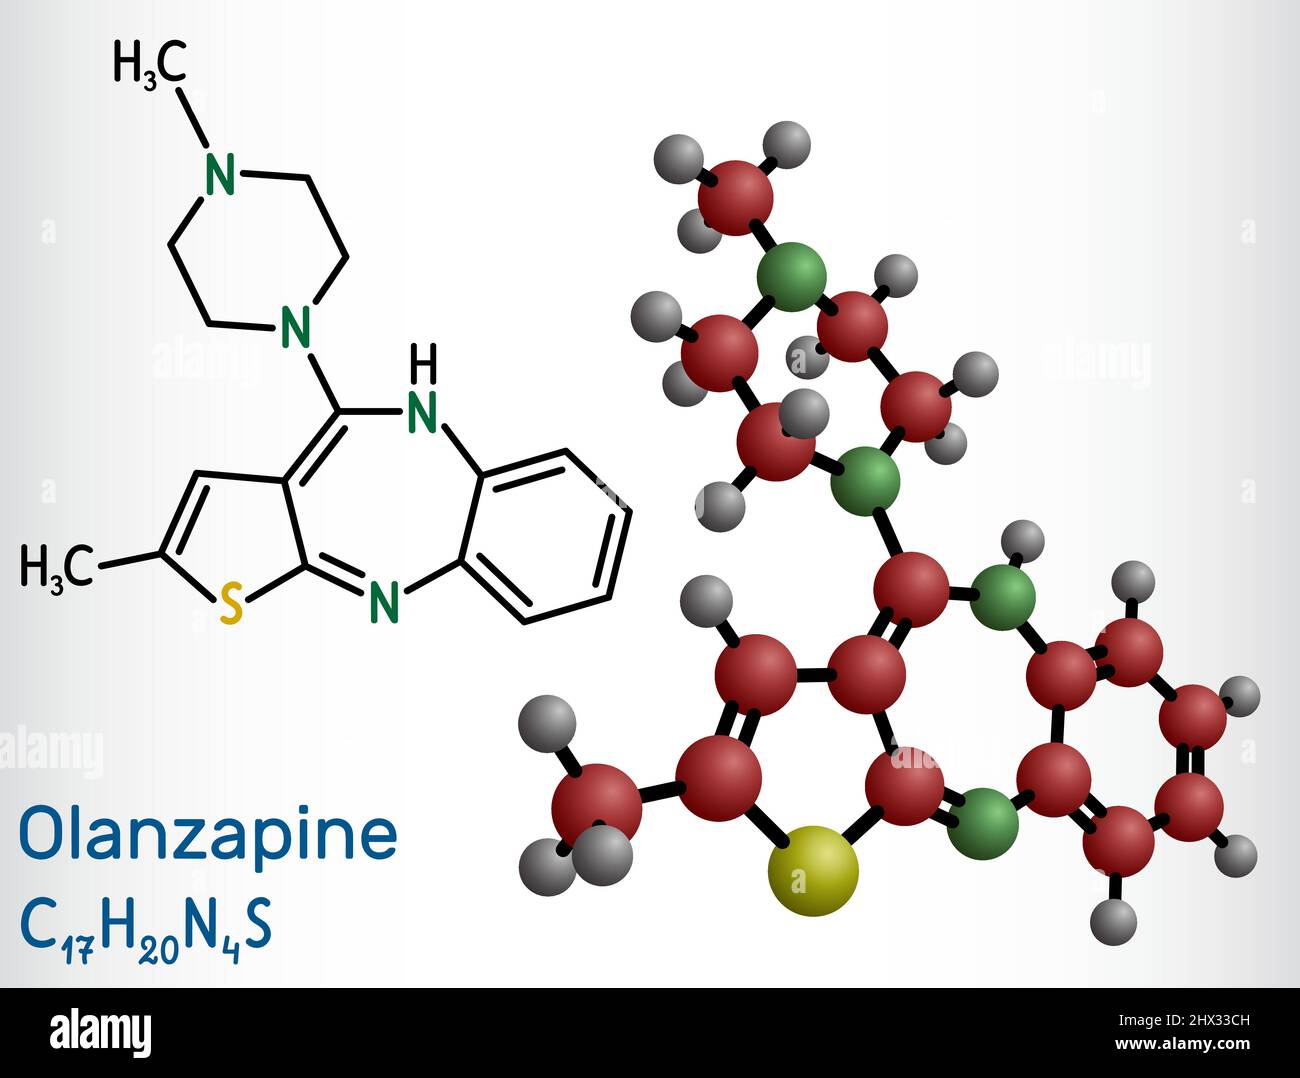 Olanzapin-Molekül. Es ist ein atypisches antipsychotisches Medikament zur Behandlung von Schizophrenie, bipolarer Störung. Strukturelle chemische Formel und Molekül Stock Vektor